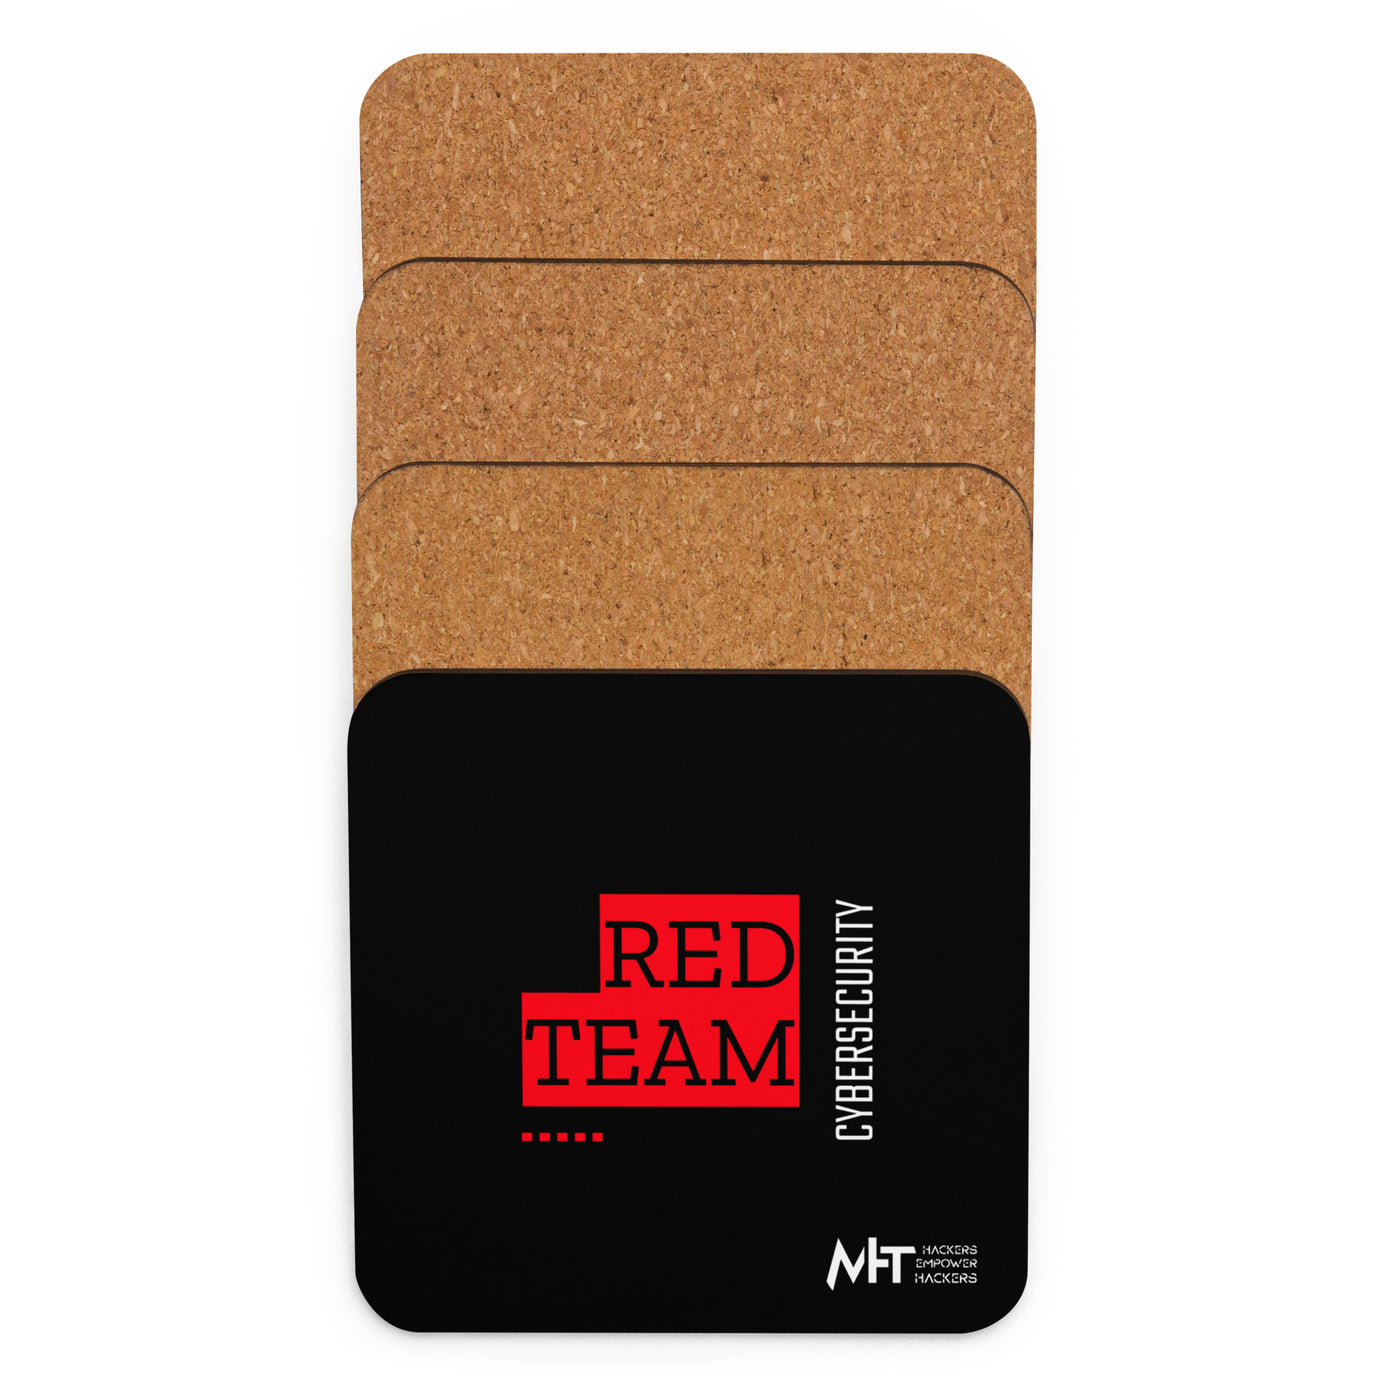 Cyber Security Red Team V13 - Cork-back coaster